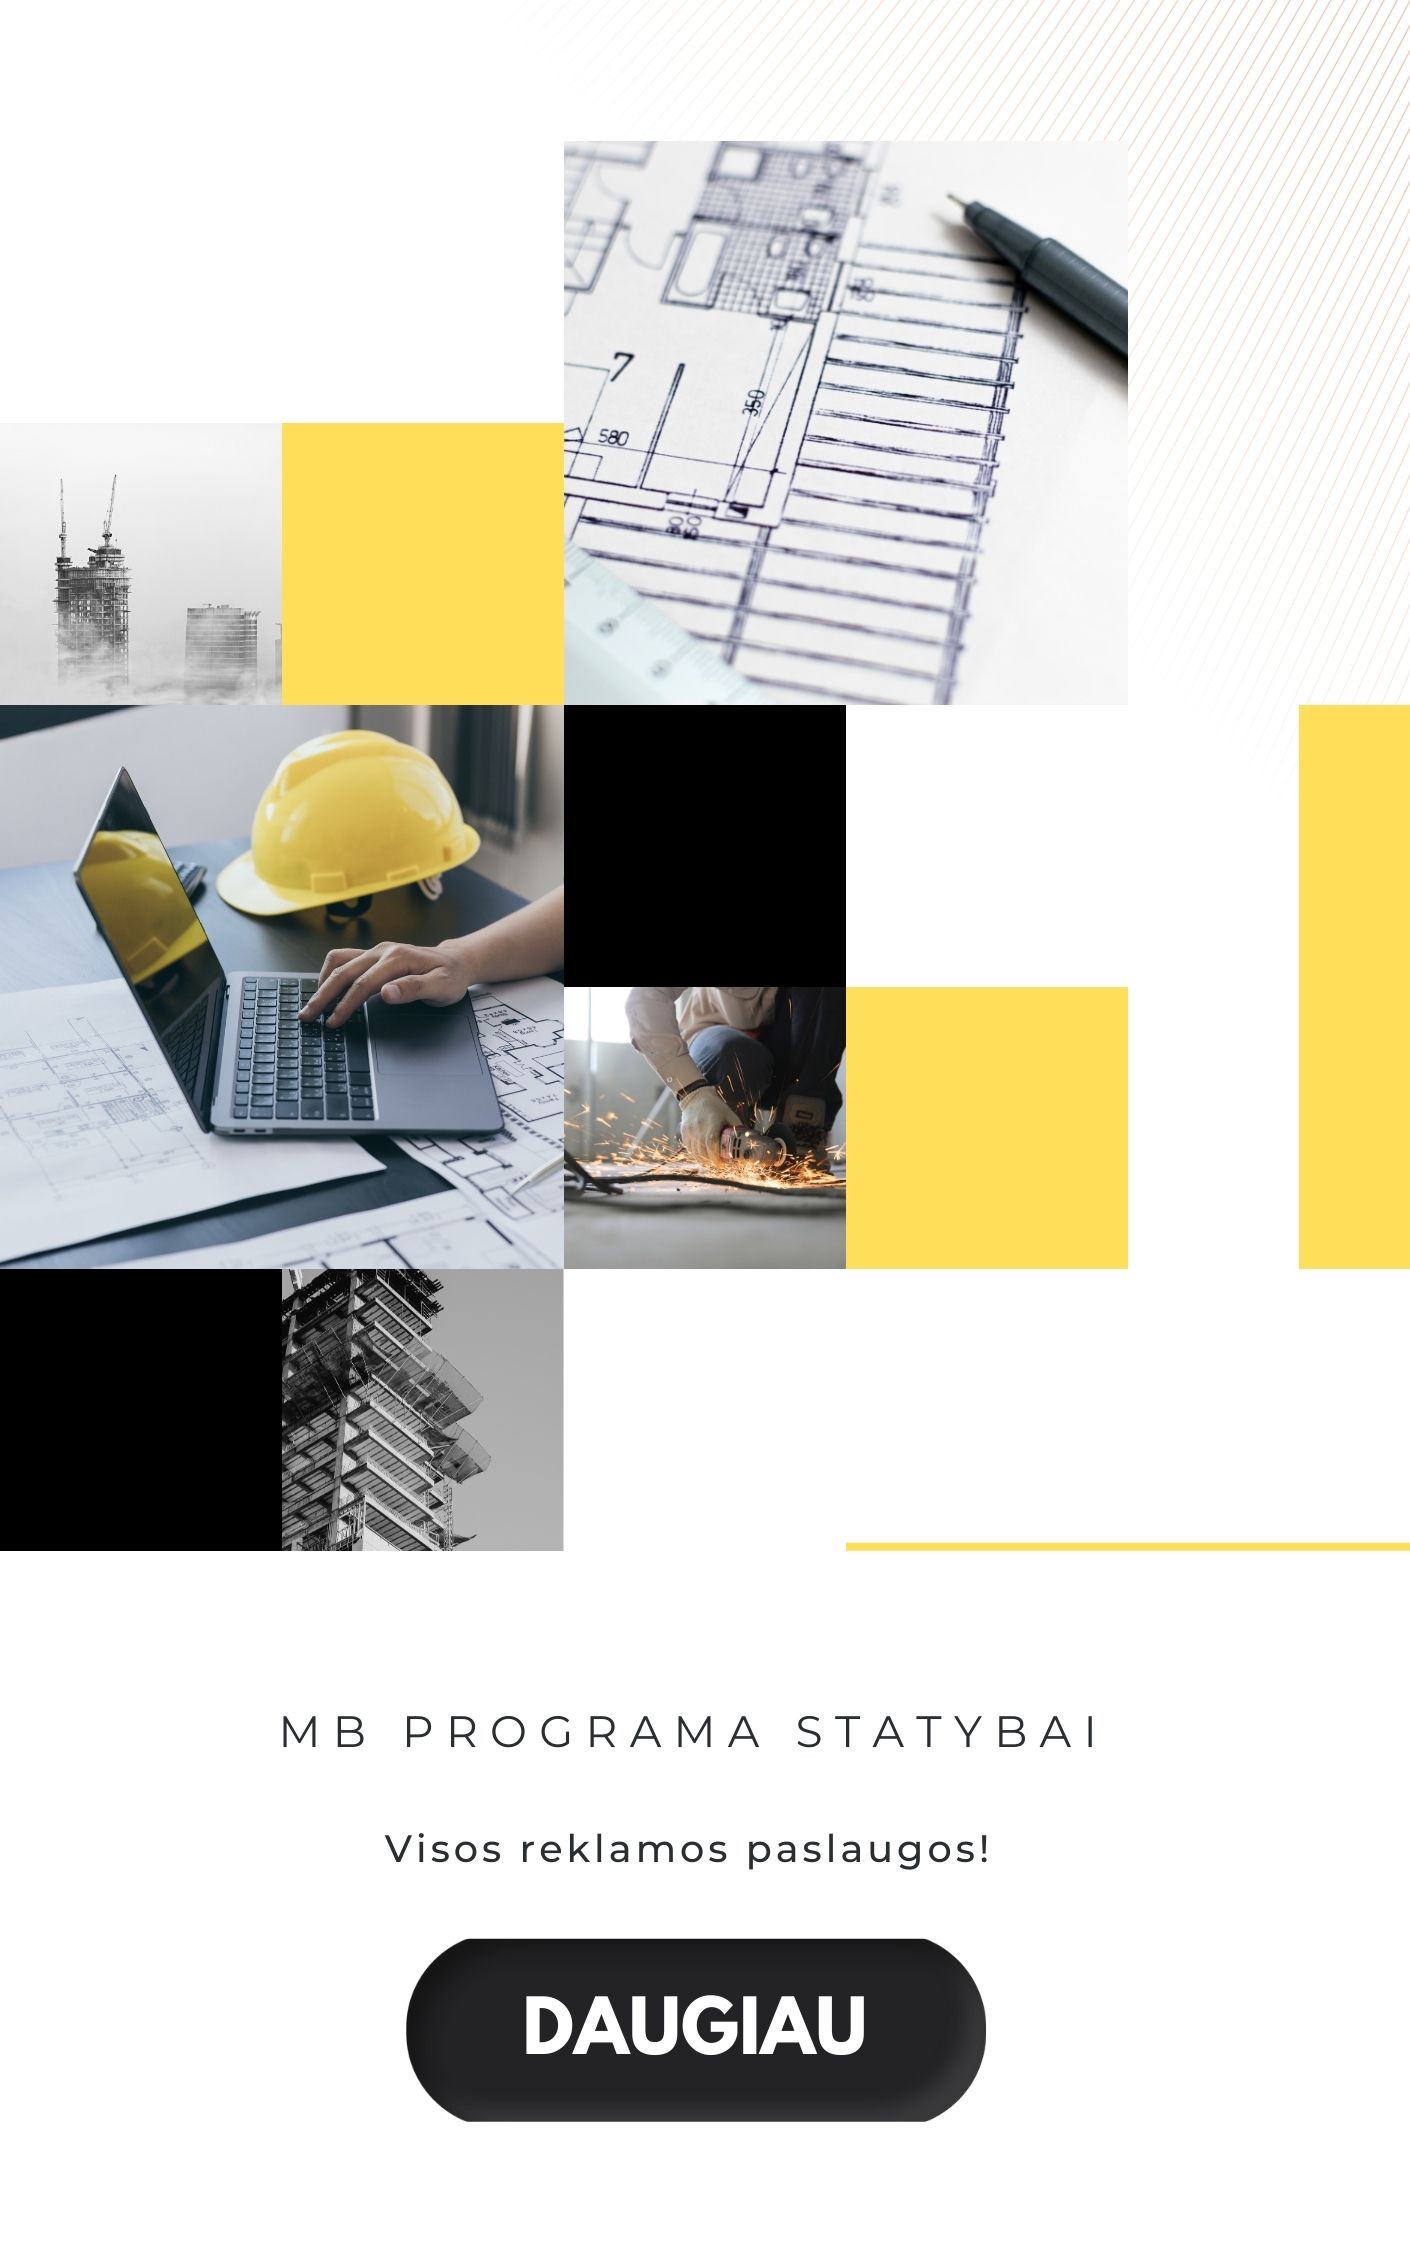 Programa statybai, MB- Efektyvesnis statybos verslo valdymas ir administravimas